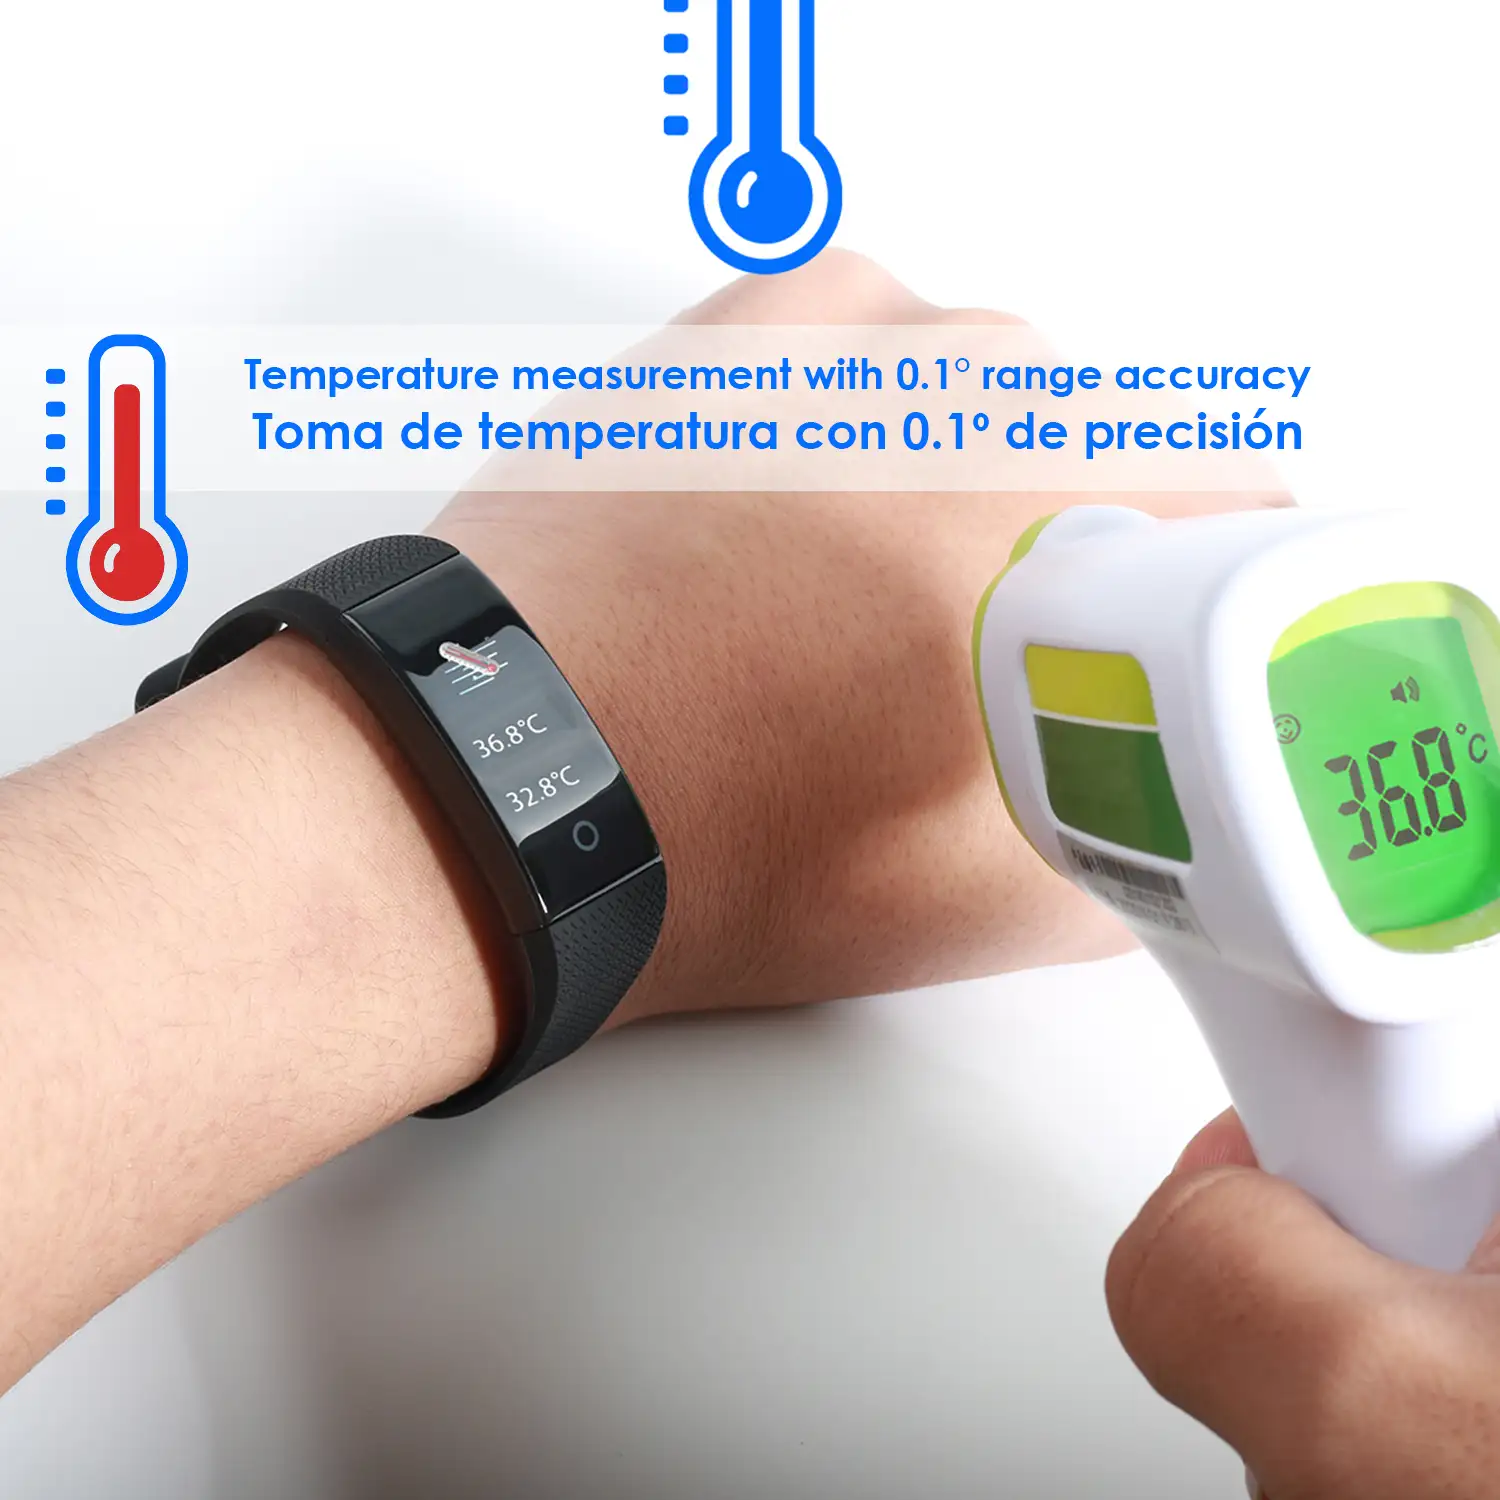 Brazalete inteligente QW18T con medición de temperatura corporal, monitor cardíaco y modo multideporte.